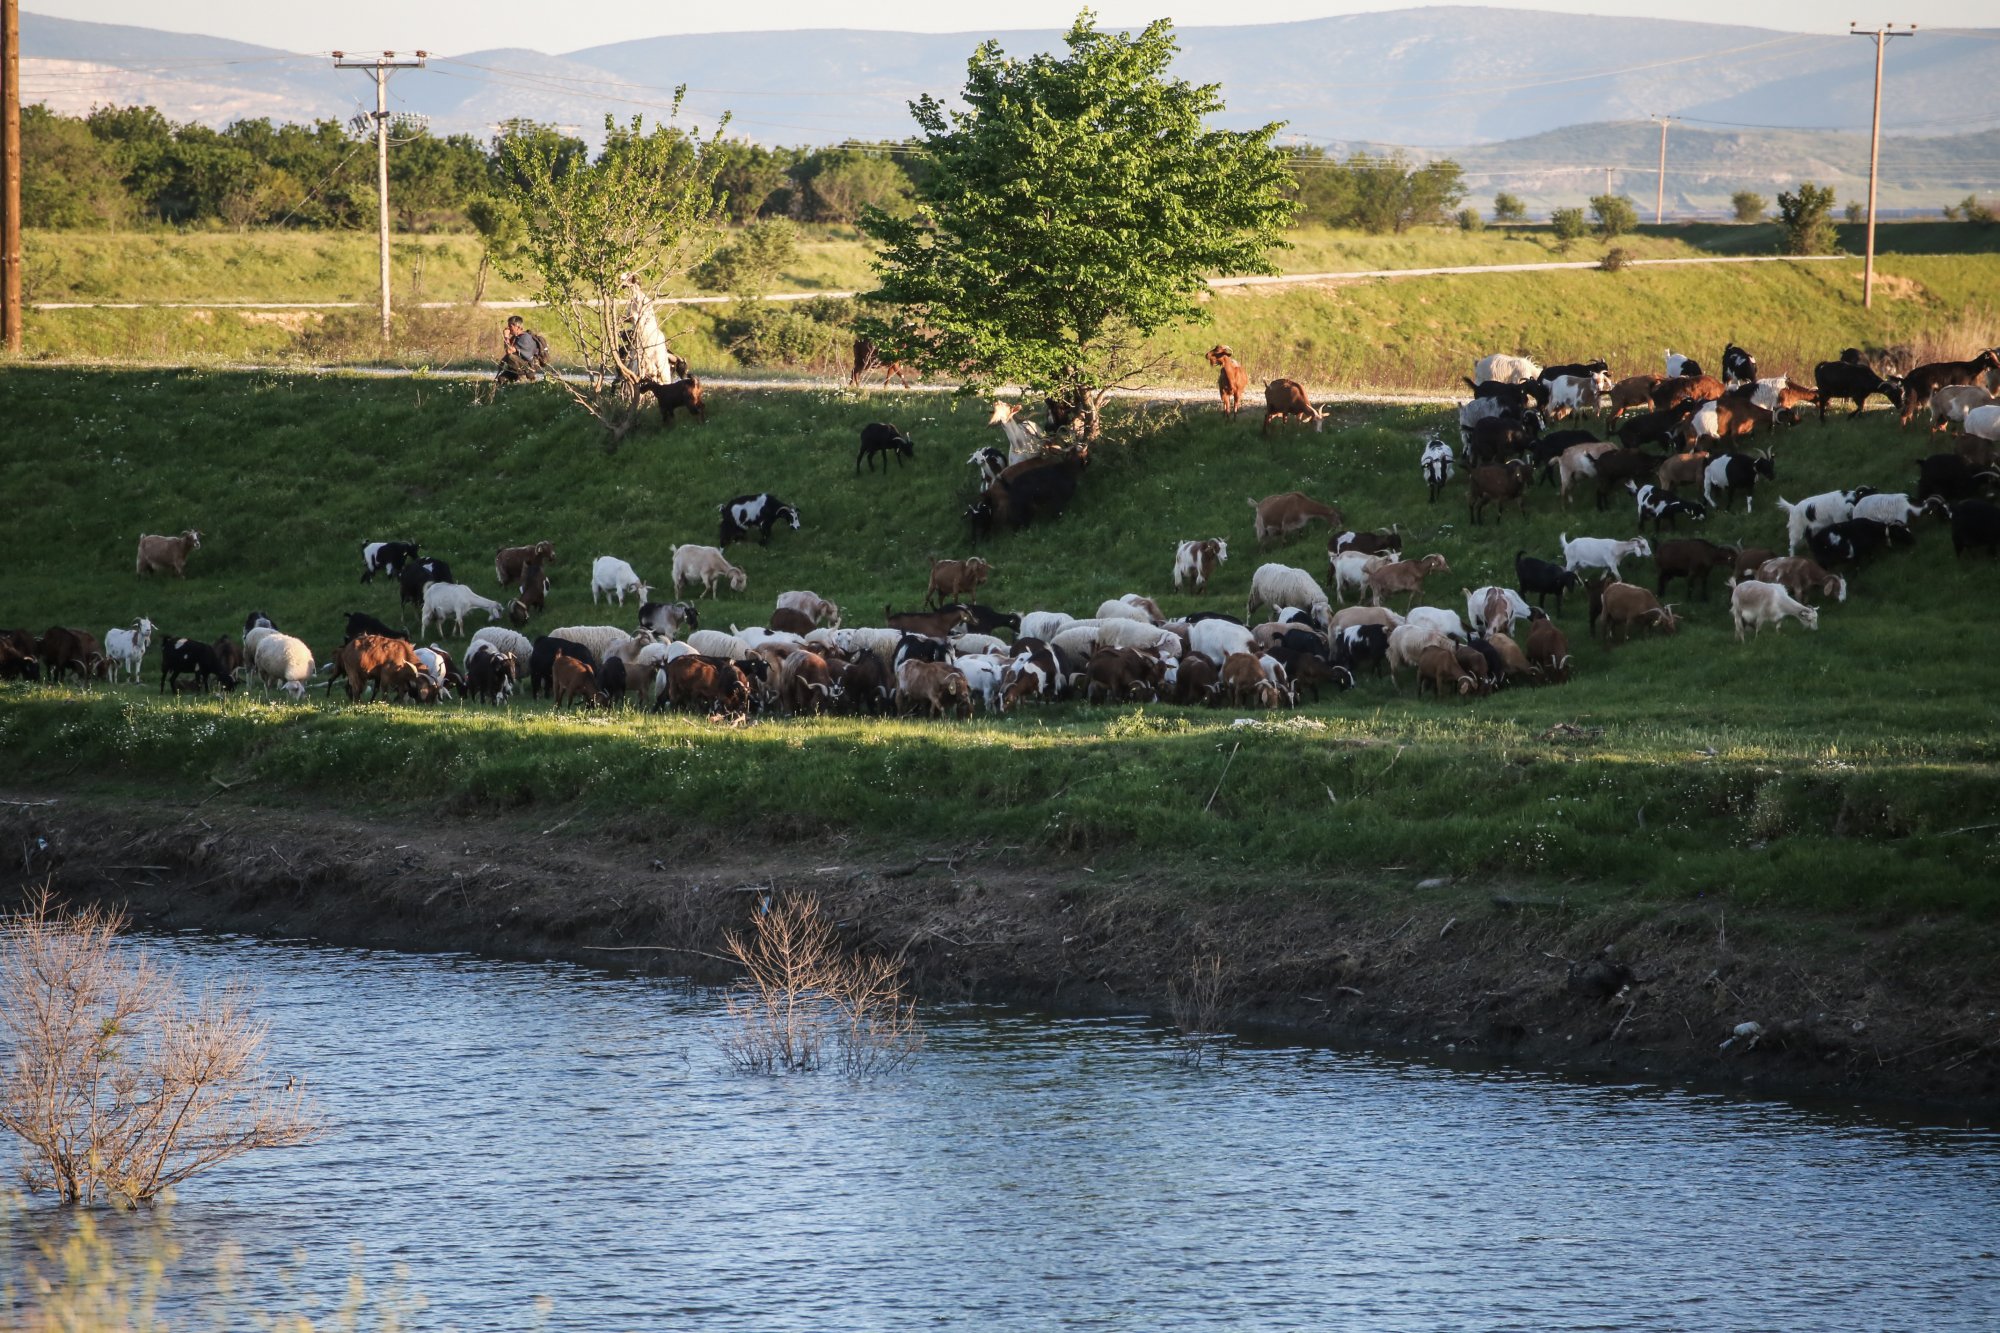 Πανώλη: Νέο κρούσμα σε αιγοπρόβατα στη Λάρισα – «Απειλείται το ζωικό κεφάλαιο της Περιφέρειας»